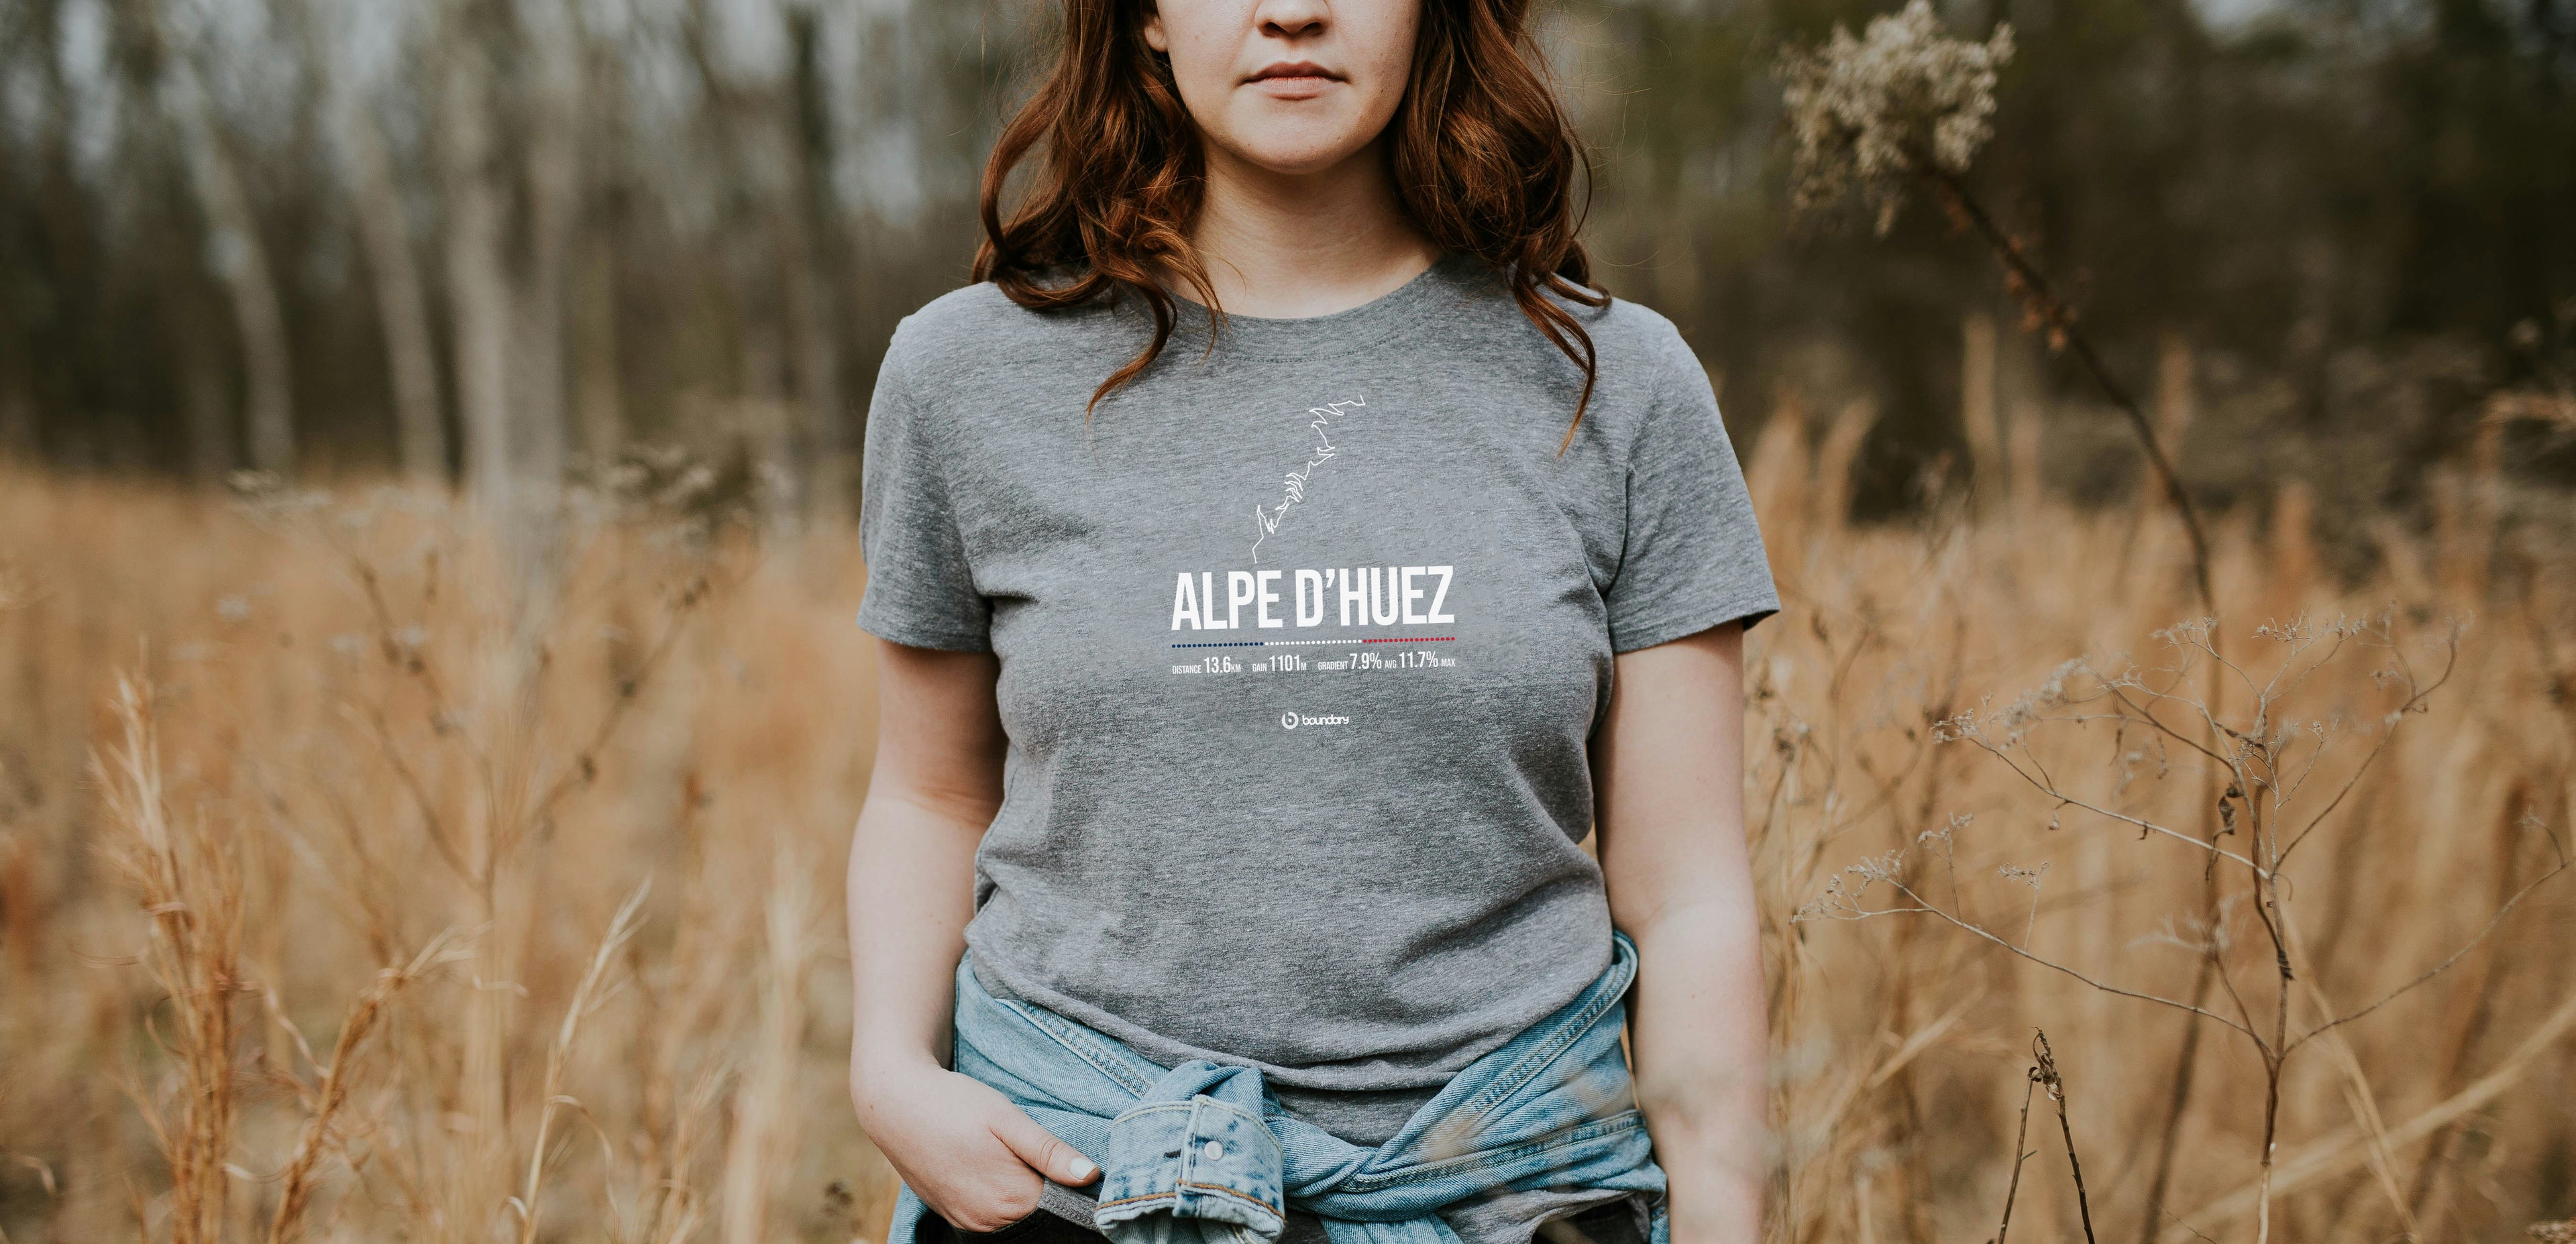 Alpe d-Heuz classic climbs t-shirt